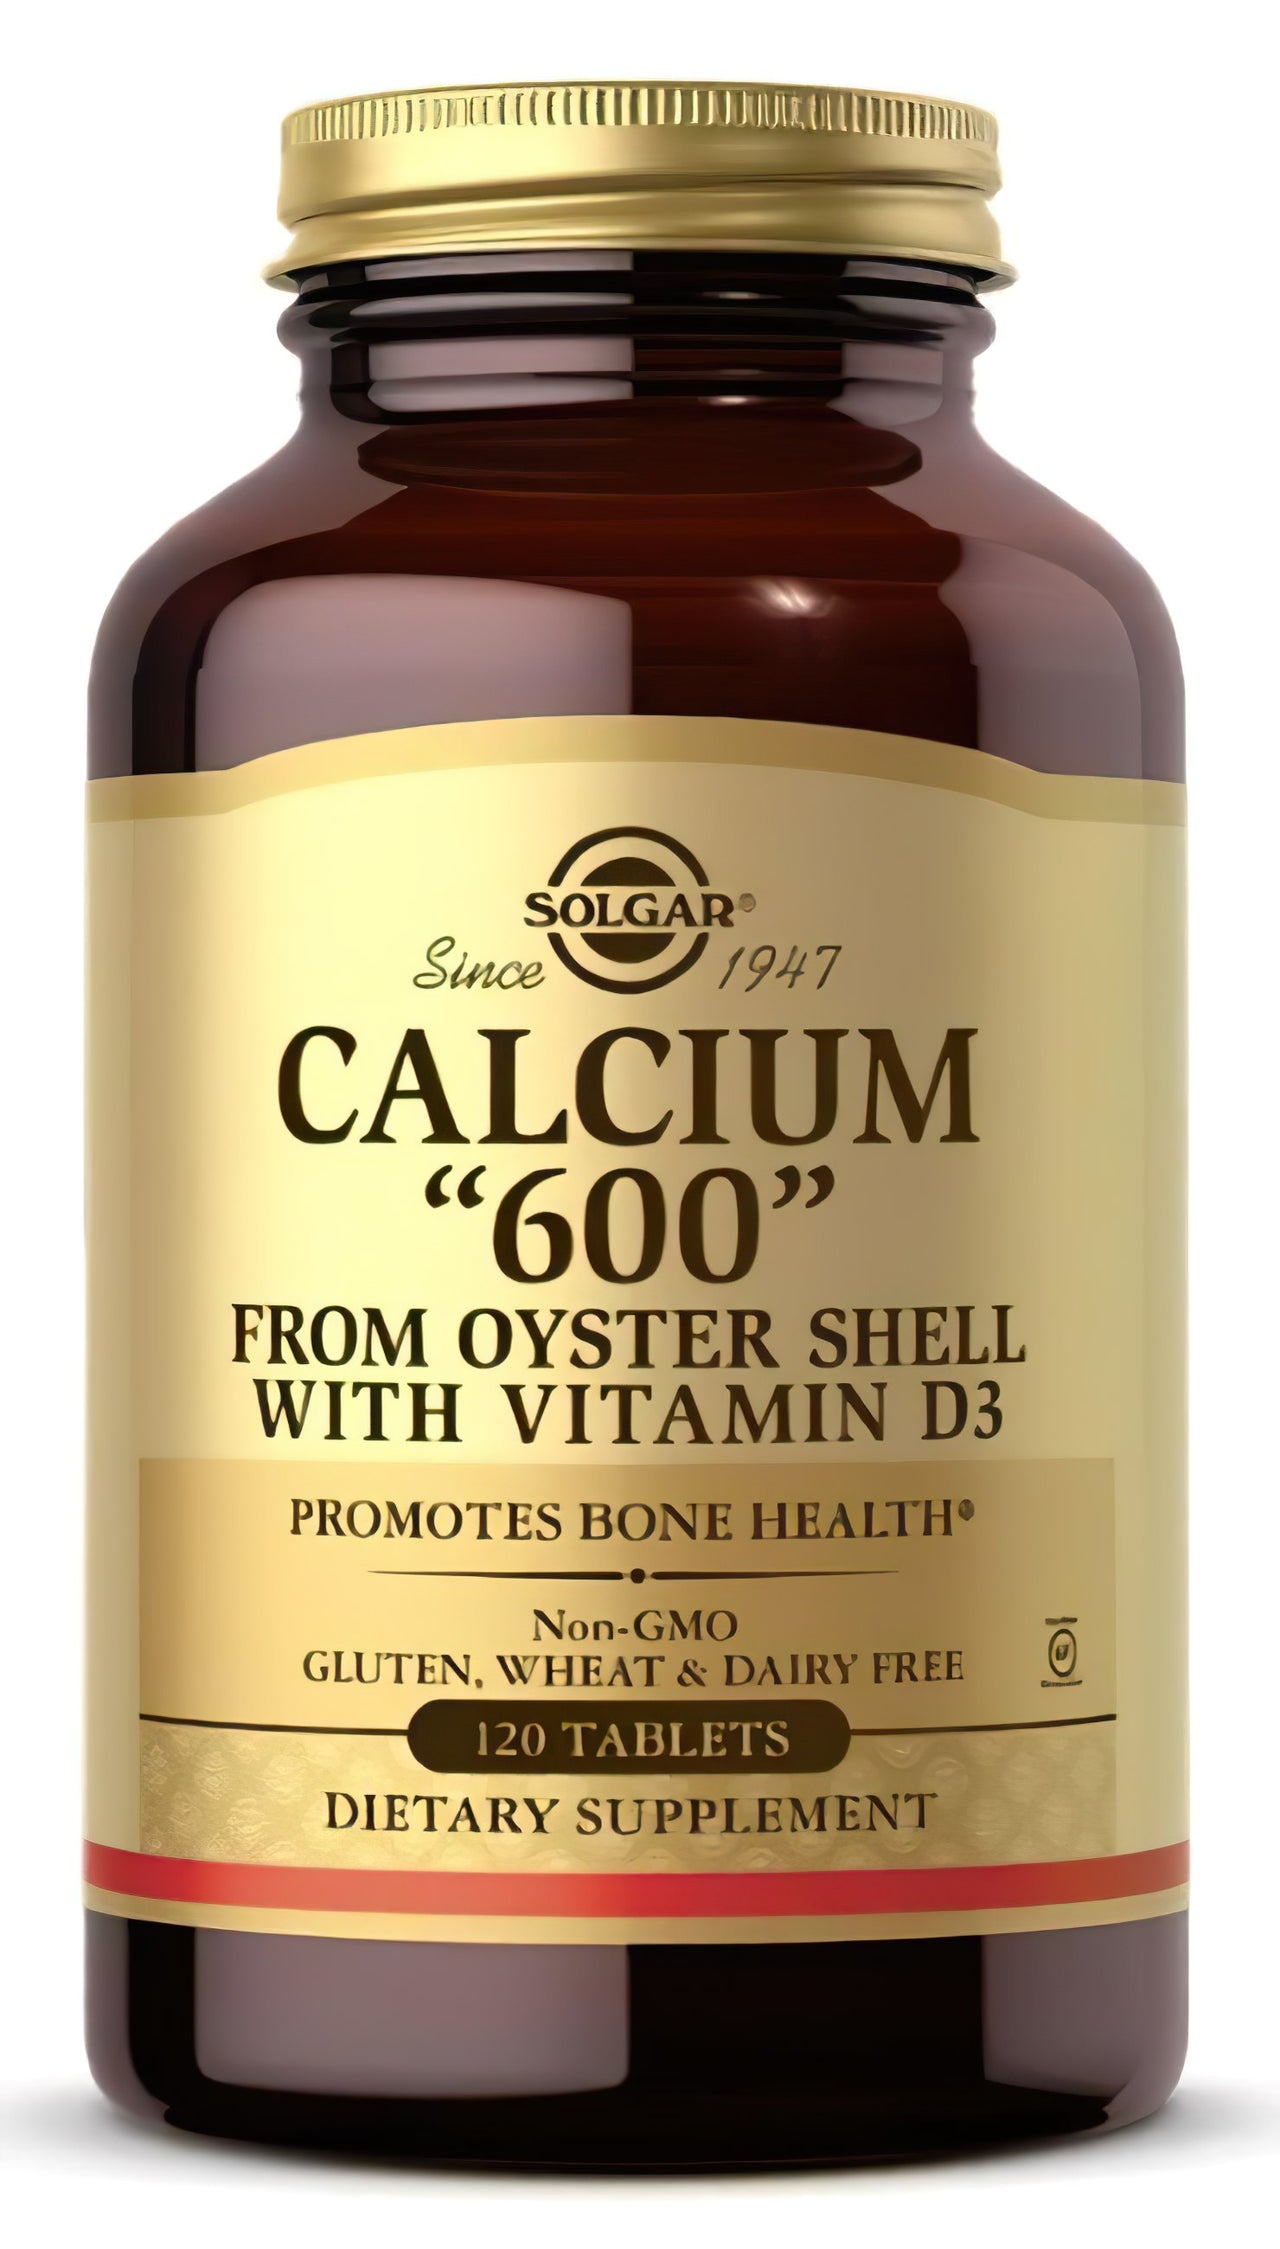 Um frasco de Solgar's Calcium "600" 120 comprimidos (de concha de ostra com vitamina D3) de concha de ostra.